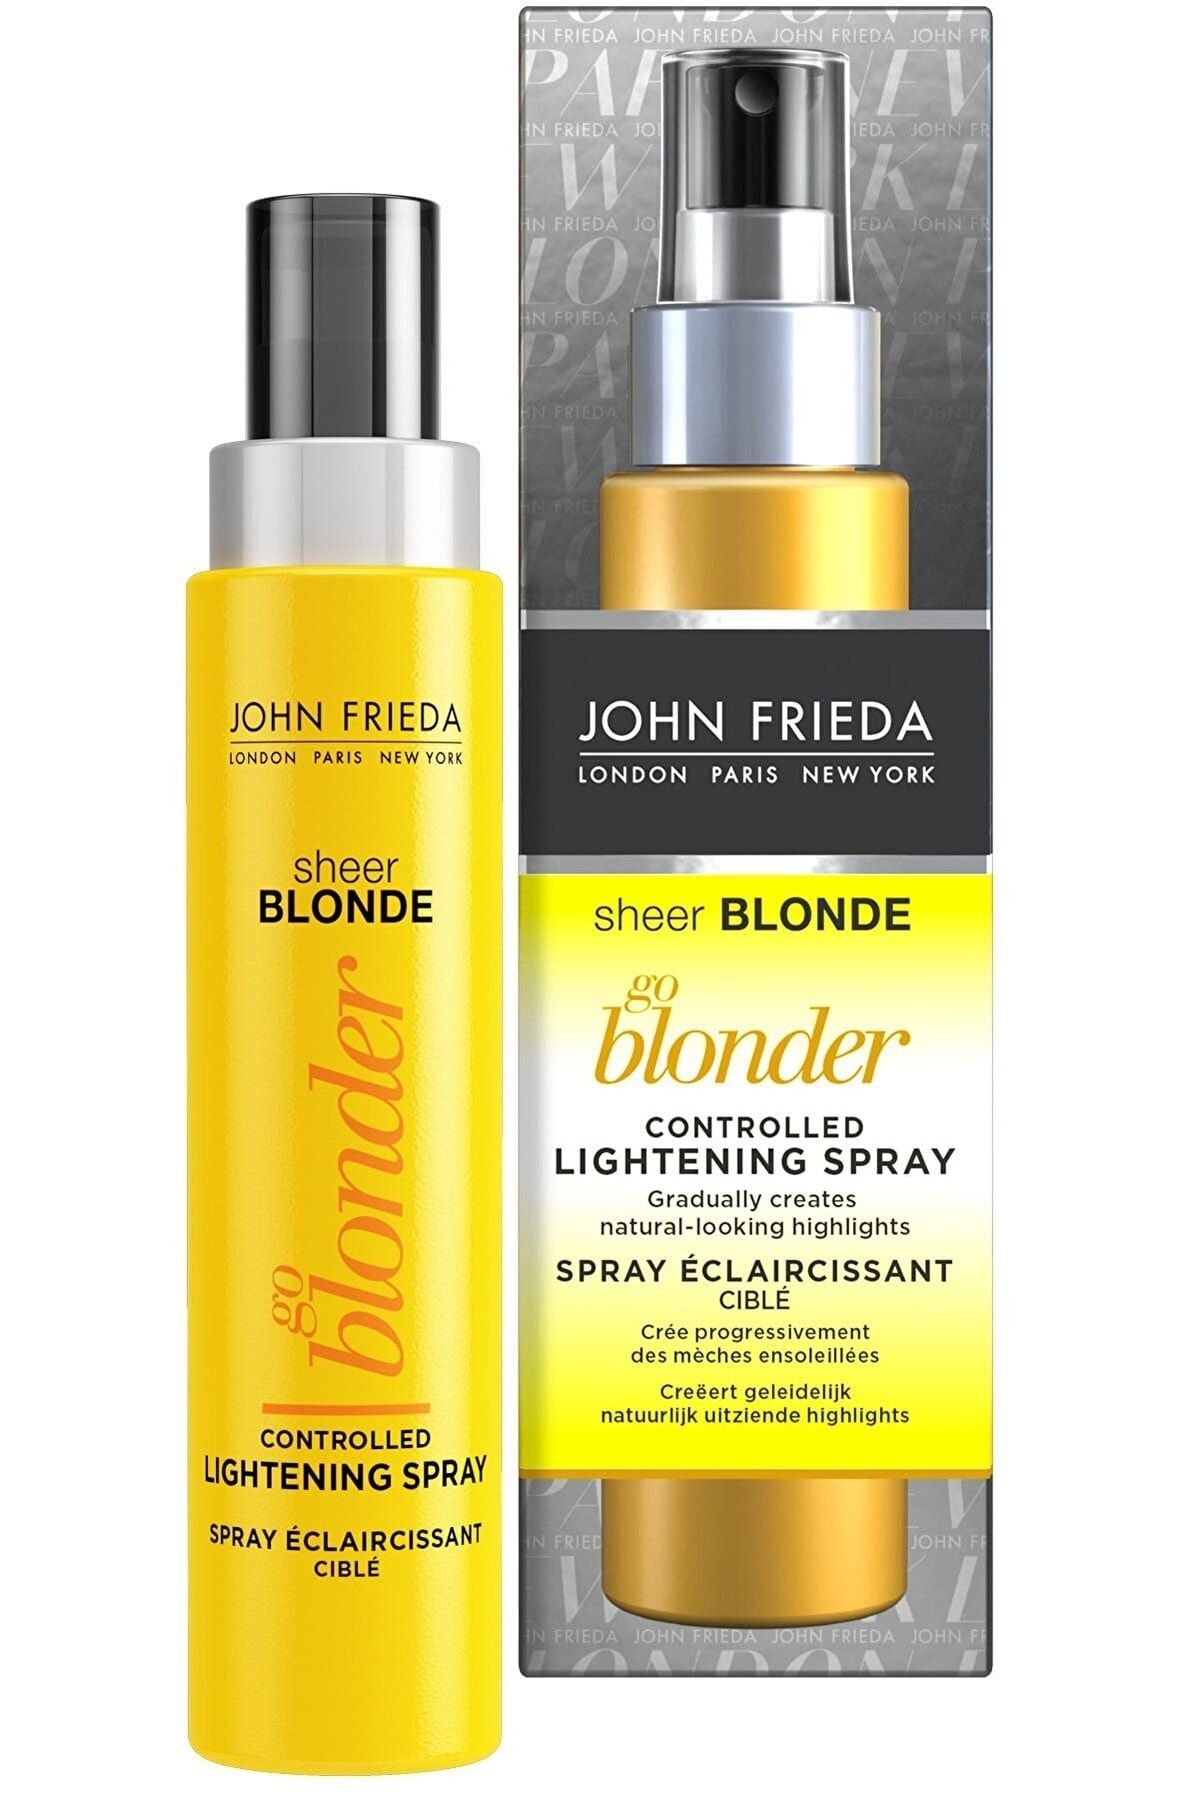 John Frieda Sarı Saçlar için Renk Açıcı Sprey - Sheer Blonde Go Blonder Lightening  100 ml 5037156159240